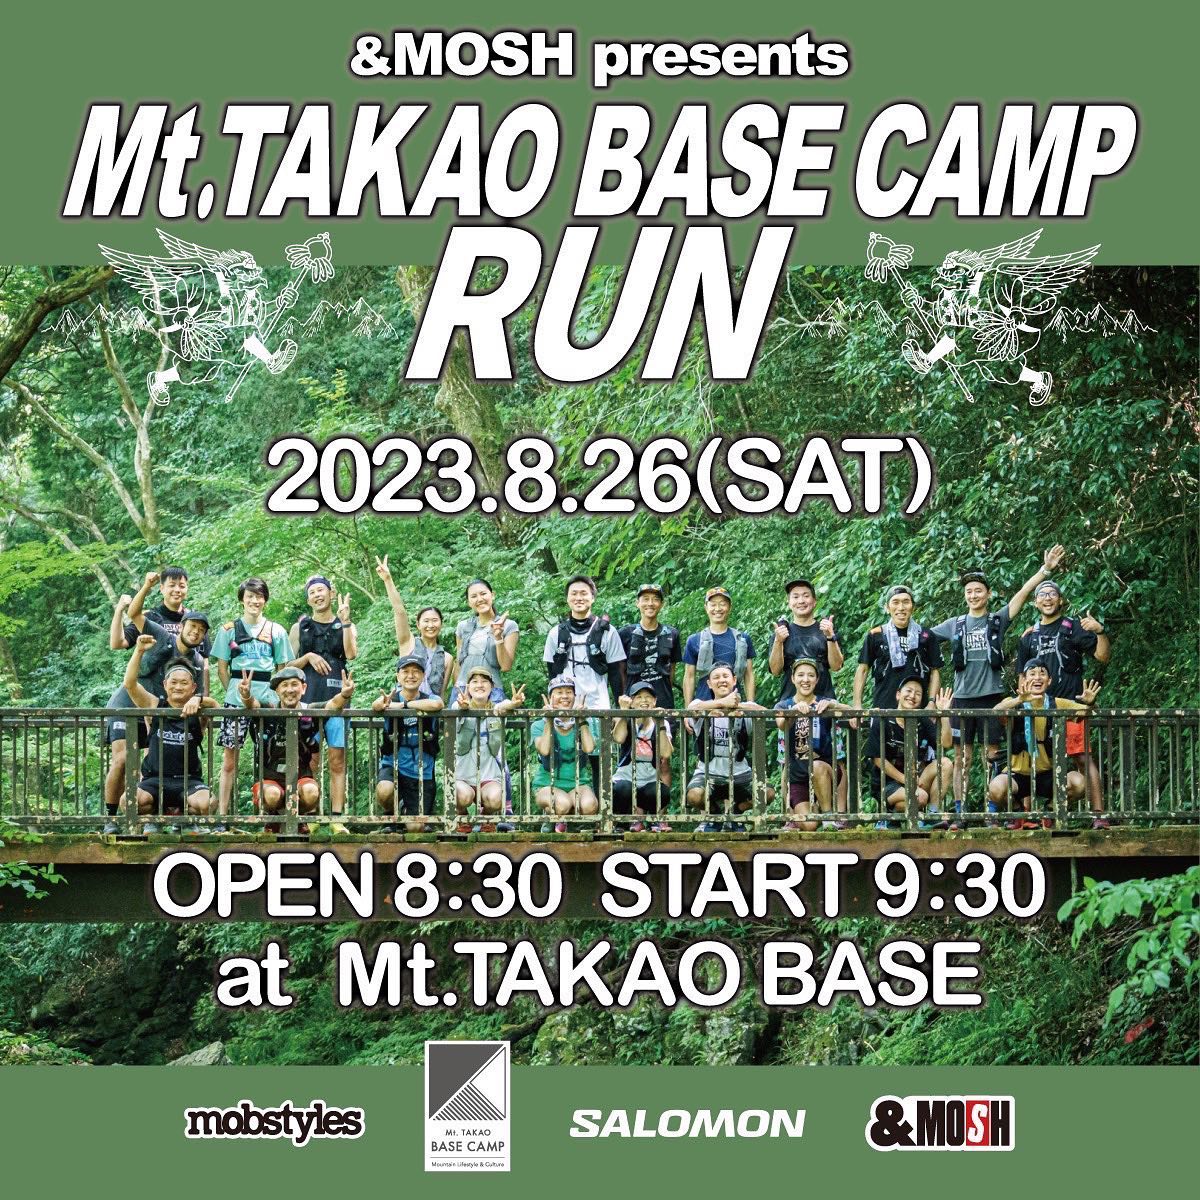 Mt.TAKAO BASE CAMP RUN